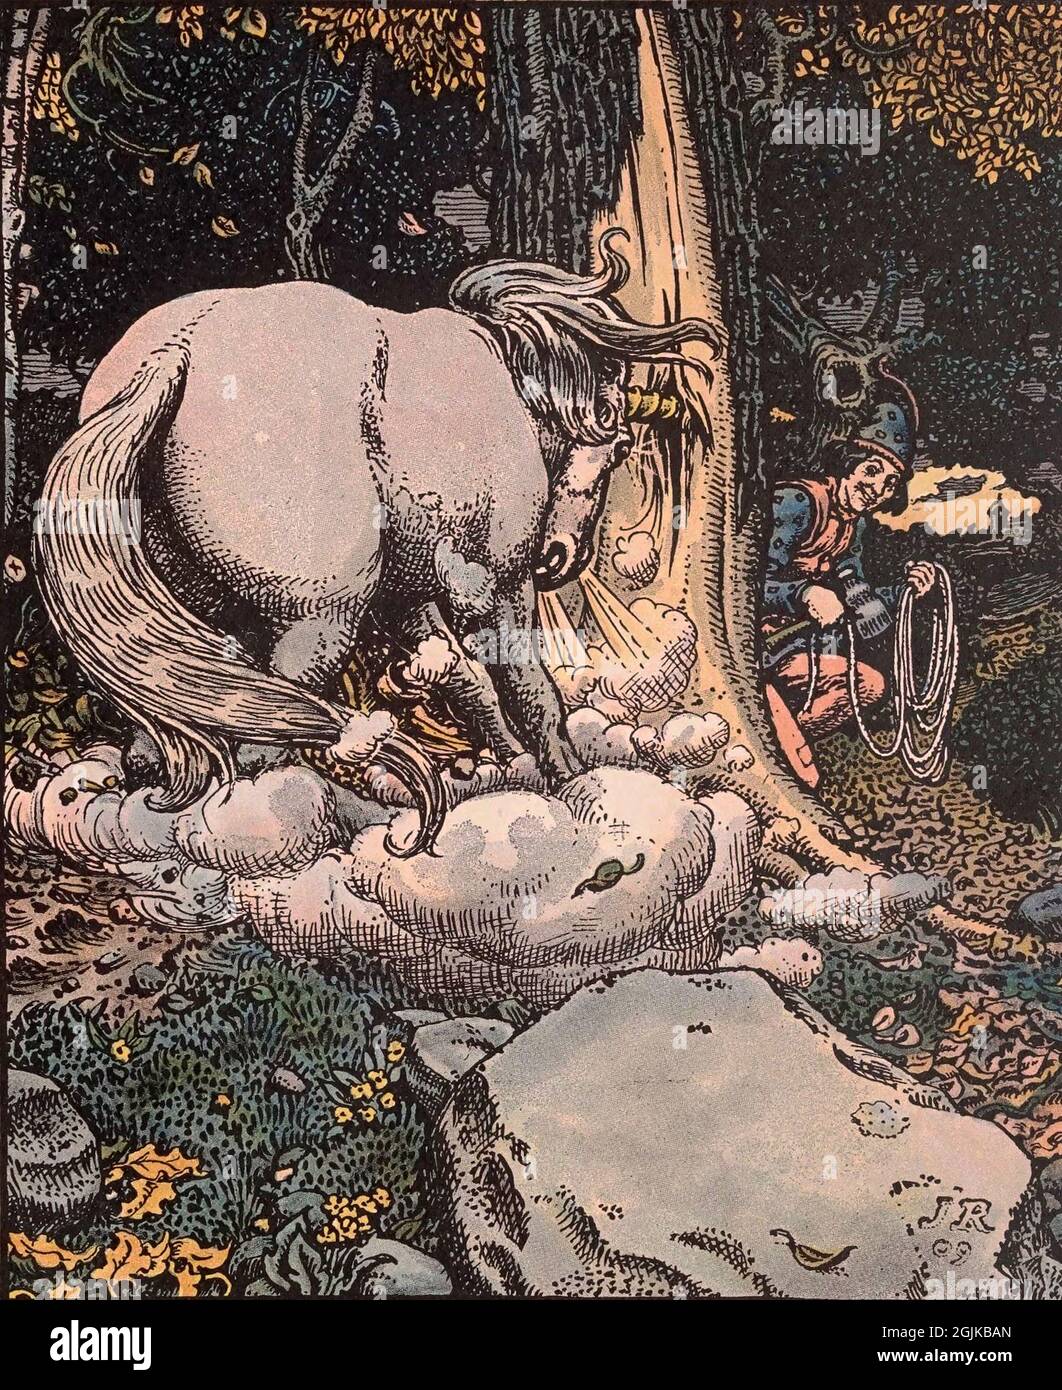 Illustration aus dem Buch Grimms Tiergeschichten - das schreckliche Einhorn wird vom flinken Schneider gefangen Stockfoto